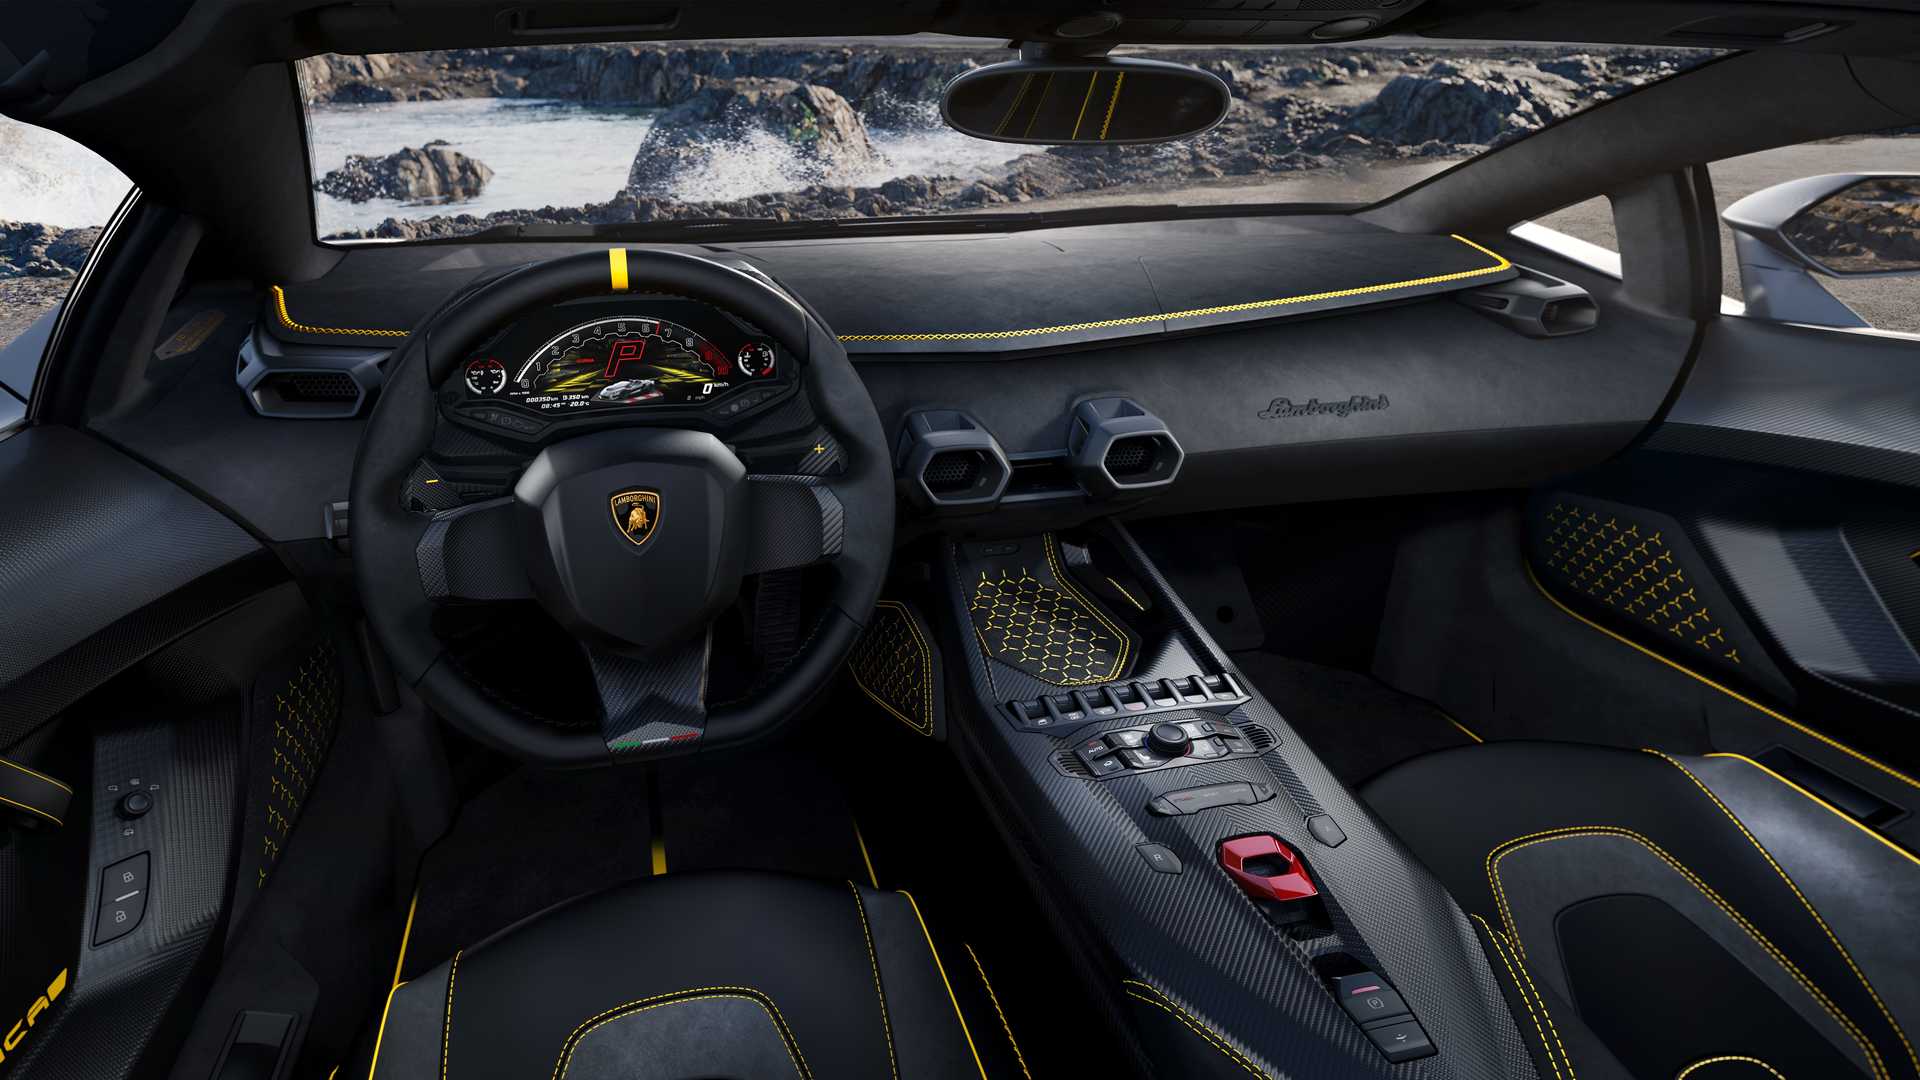 Lamborghini ra mắt bộ đôi siêu xe V12 chạy xăng cuối cùng, sau đây sẽ toàn siêu xe điện êm ru chưa biết nẹt pô kiểu gì - Ảnh 17.